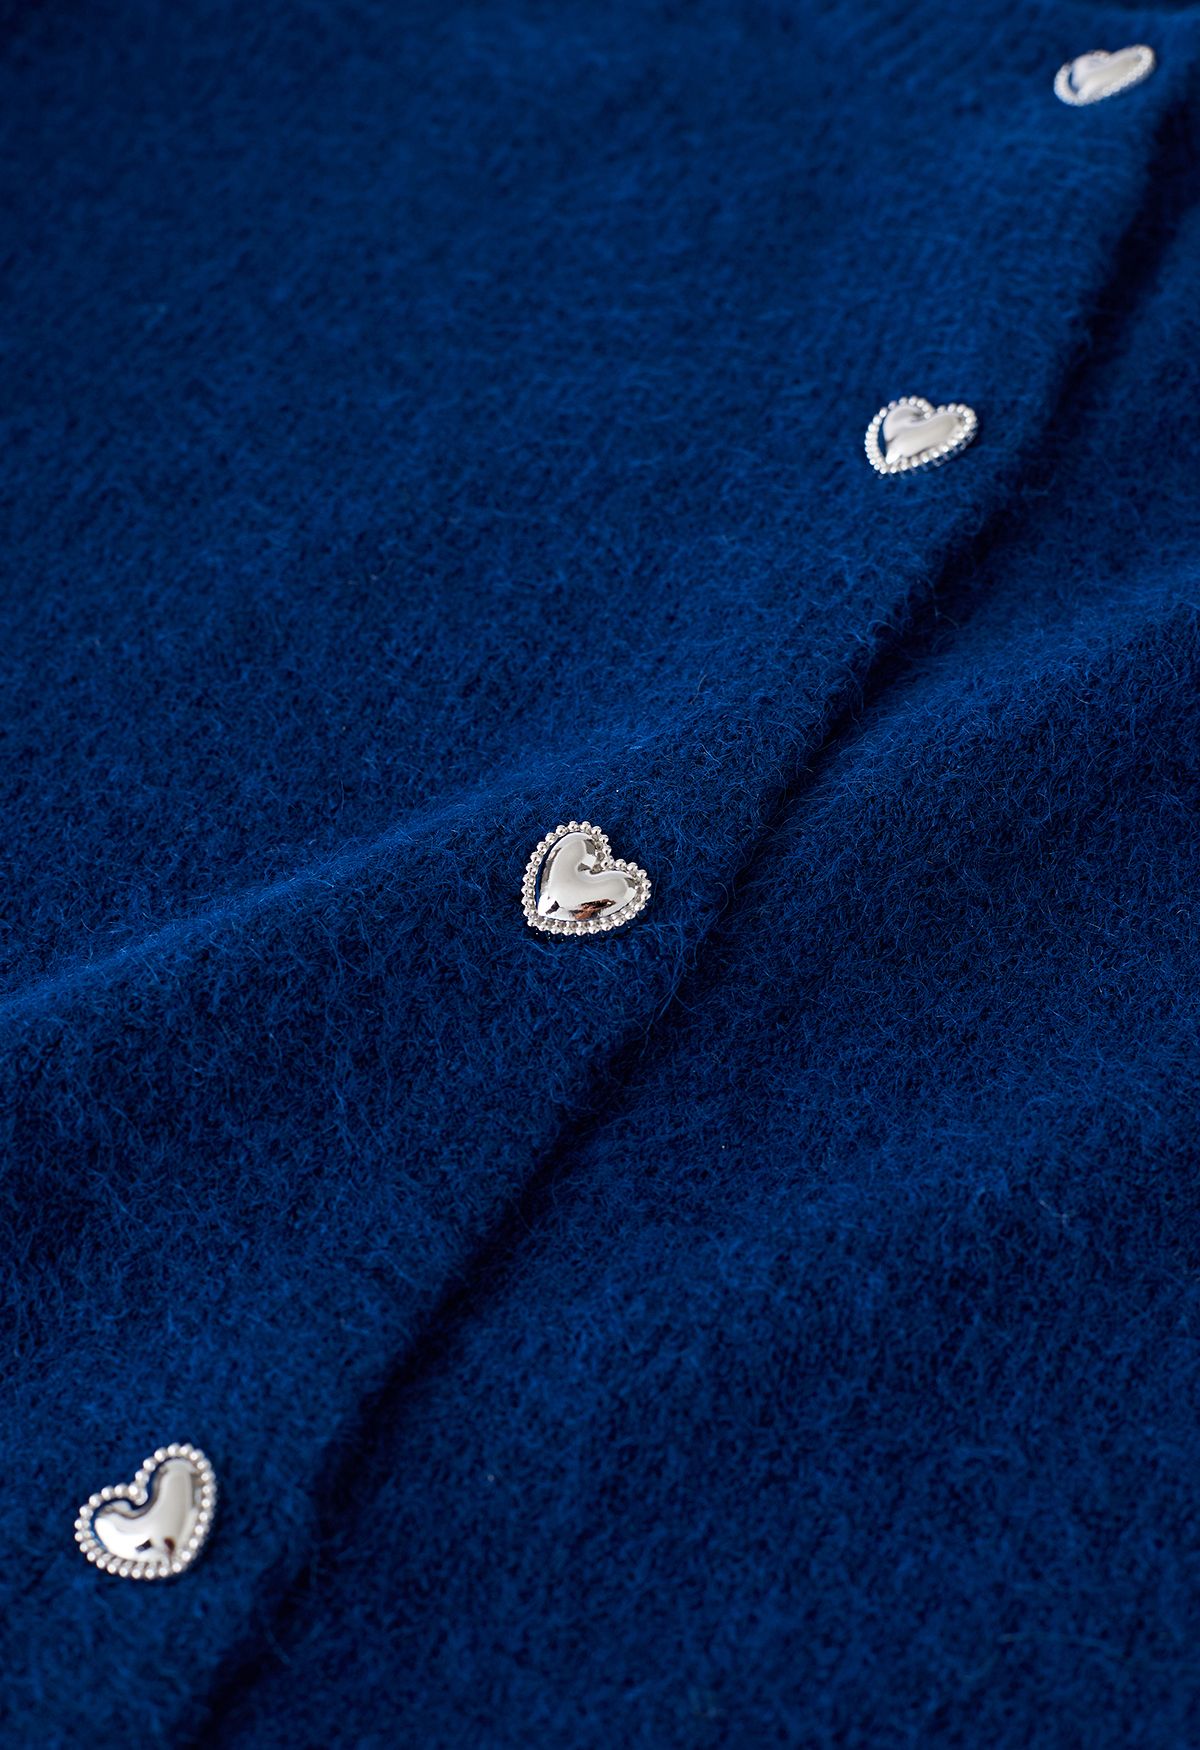 Herzförmiger Kurzstrick-Cardigan mit Knöpfen in Indigo